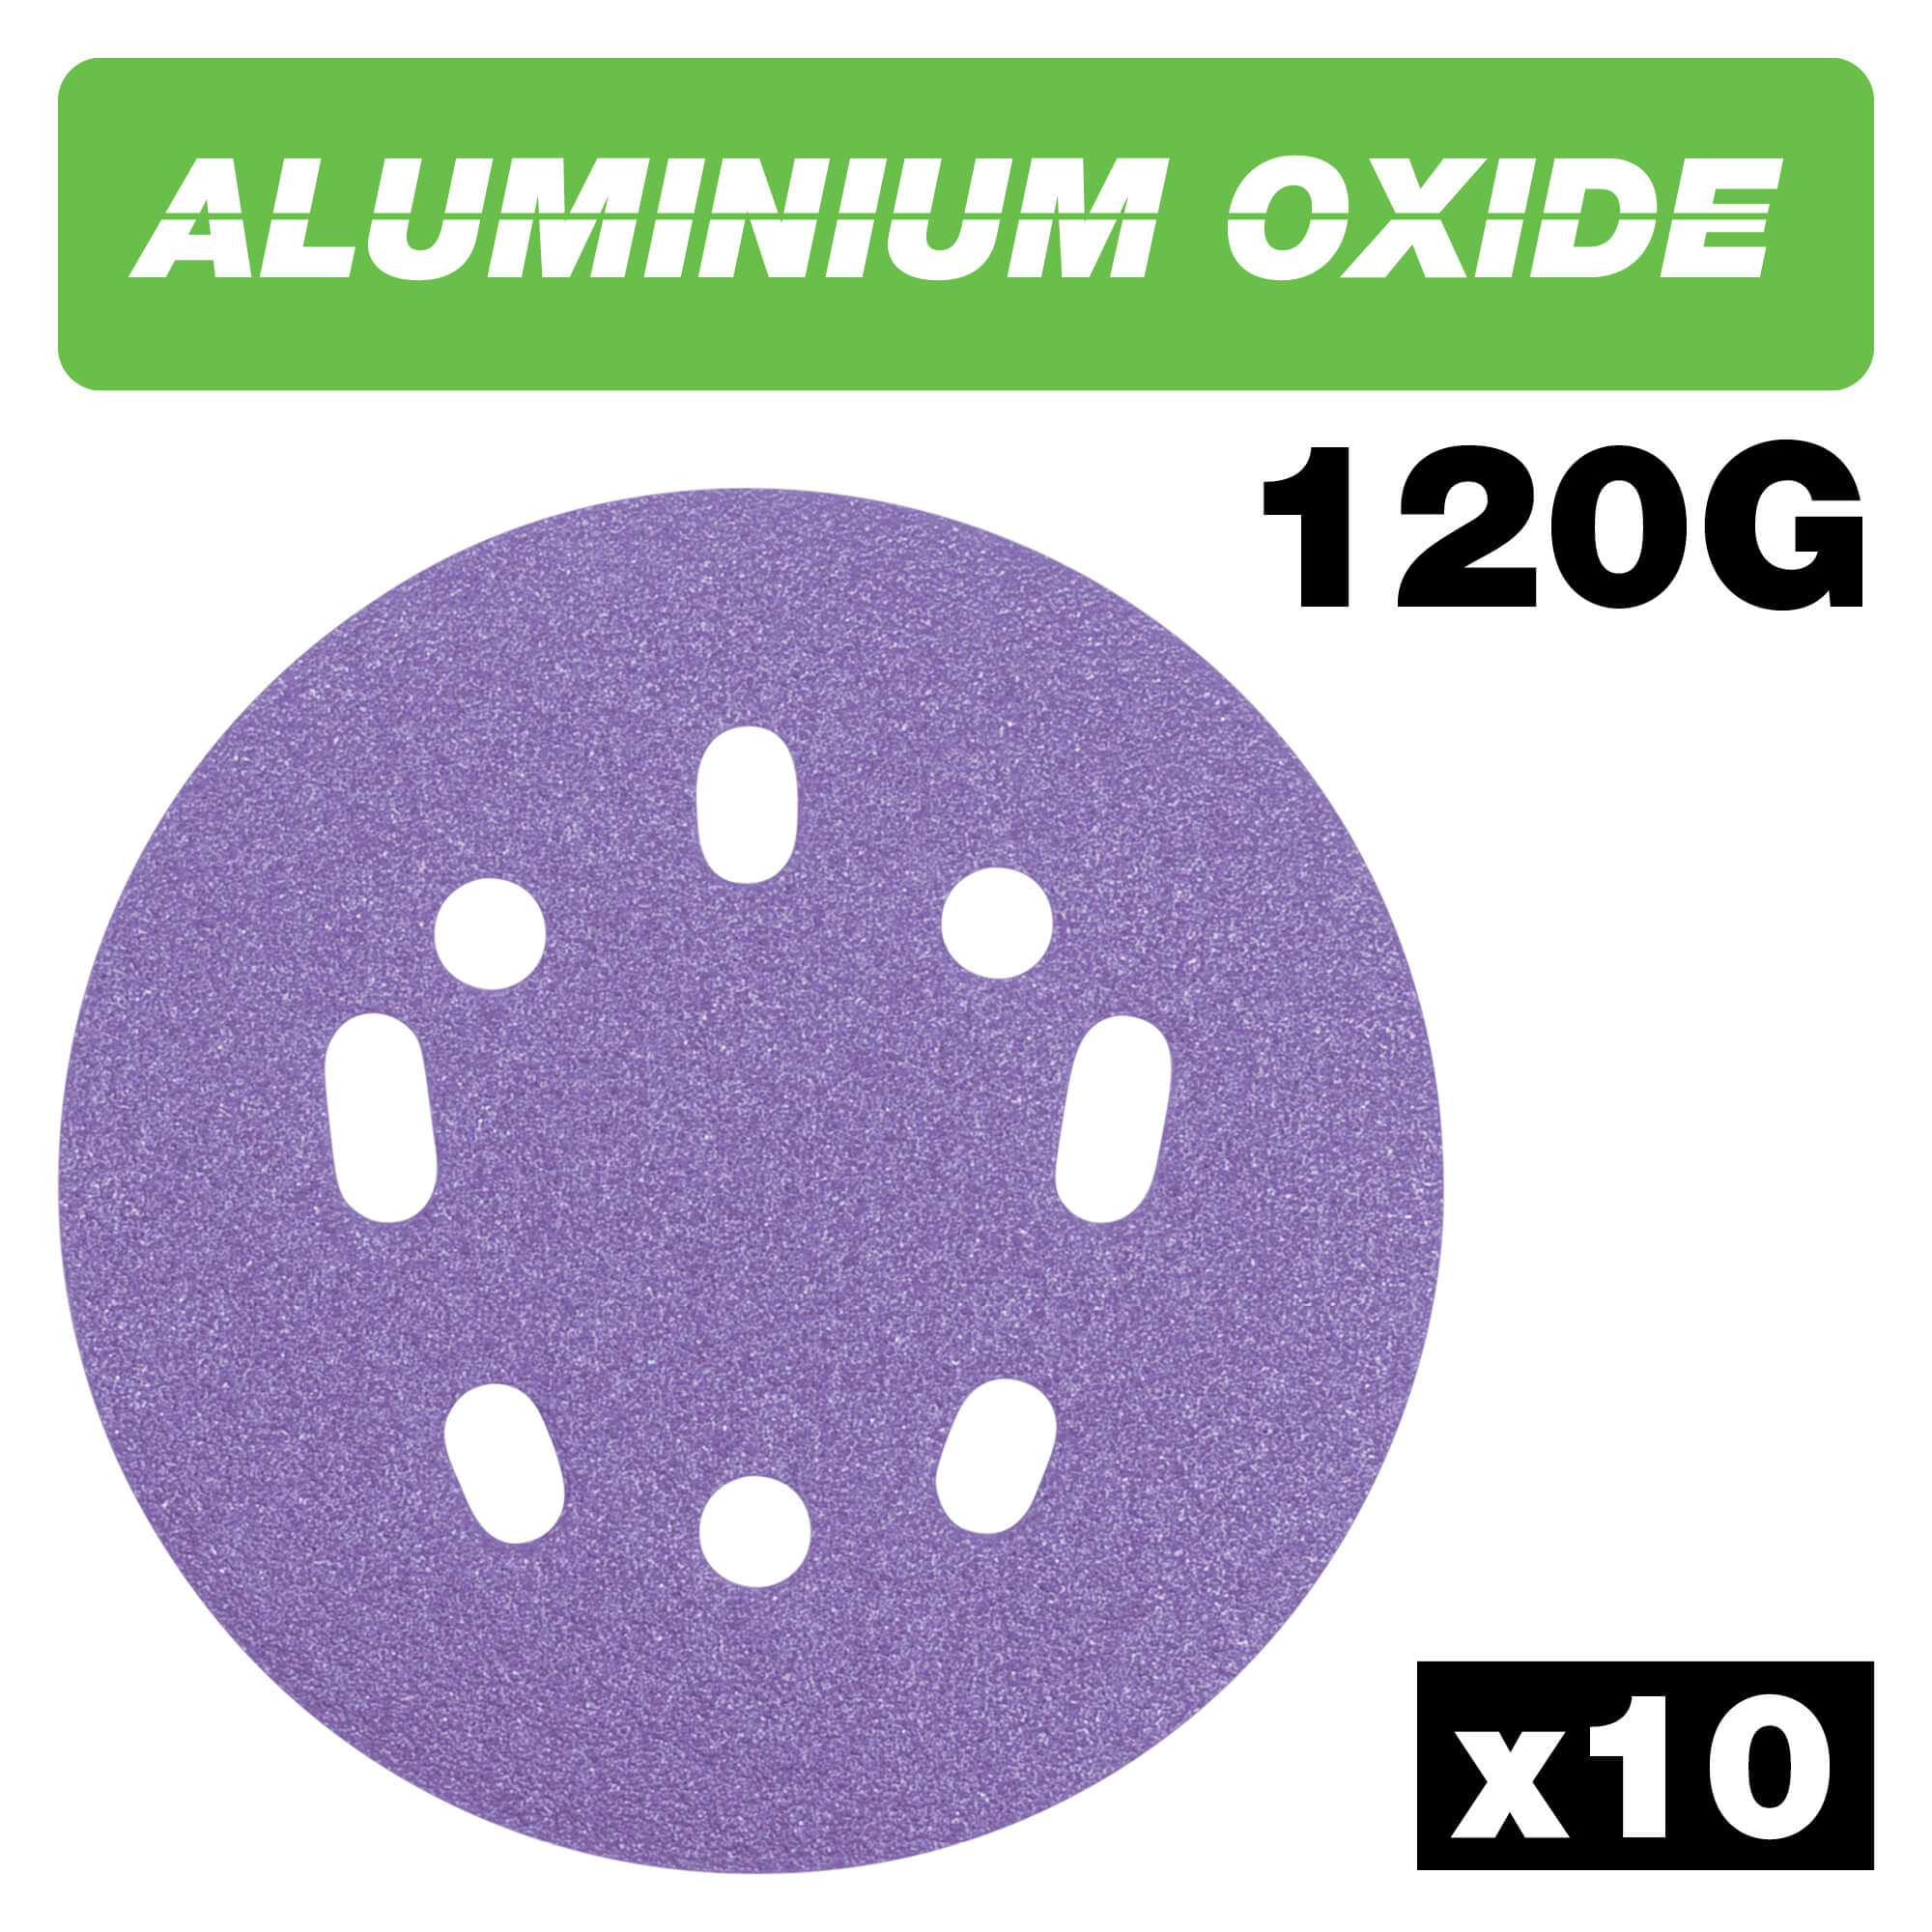 Photo of Trend Aluminium Oxide Random Orbital Sanding Disc 125mm 125mm 120g Pack Of 10